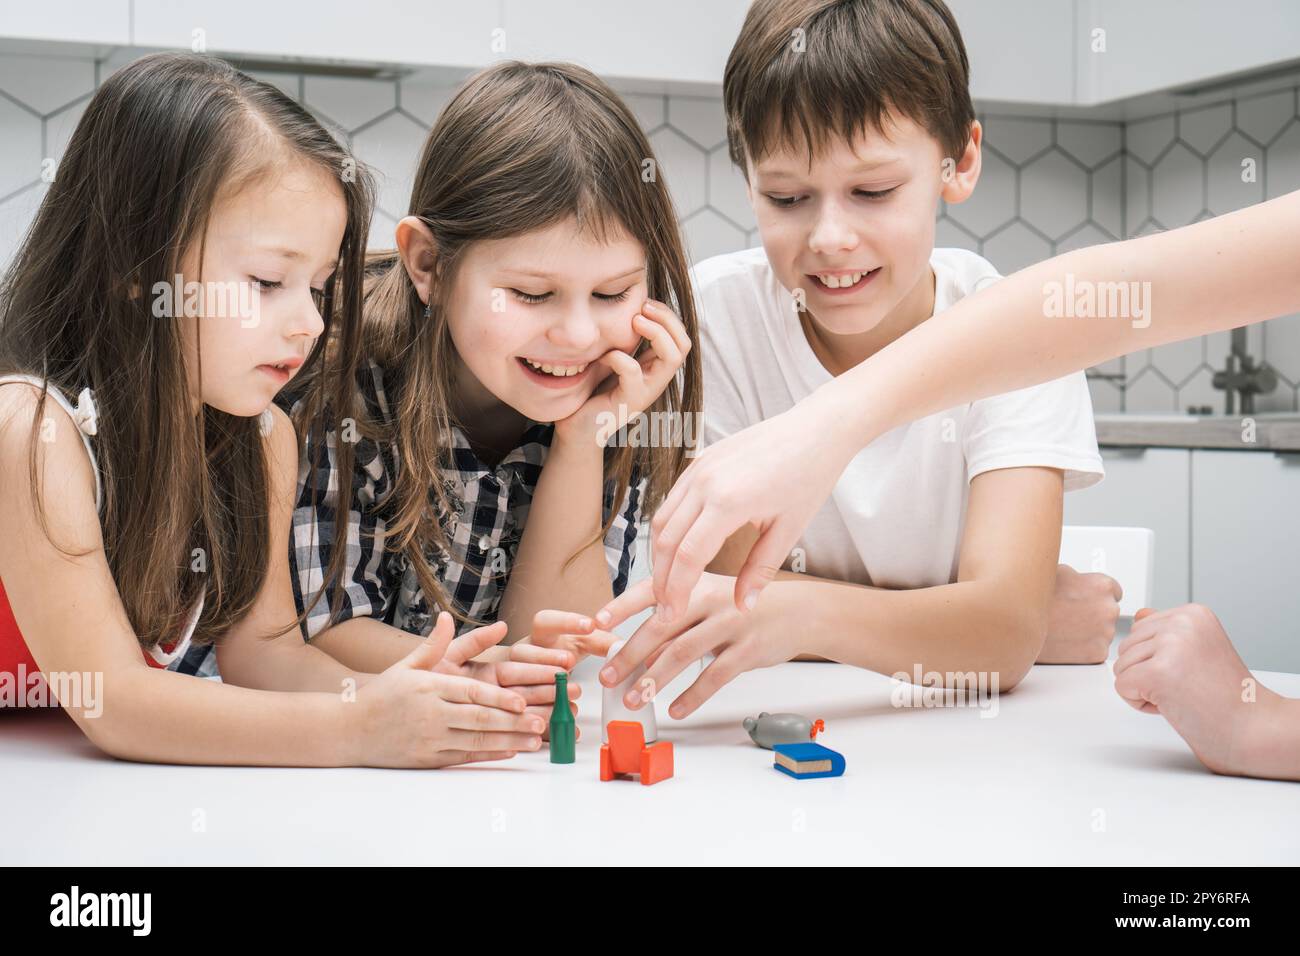 Bonne petite école les enfants jouent jouet mini meubles sur la table de cuisine. Groupe d'amis tenant de petites jouets en plastique. Banque D'Images